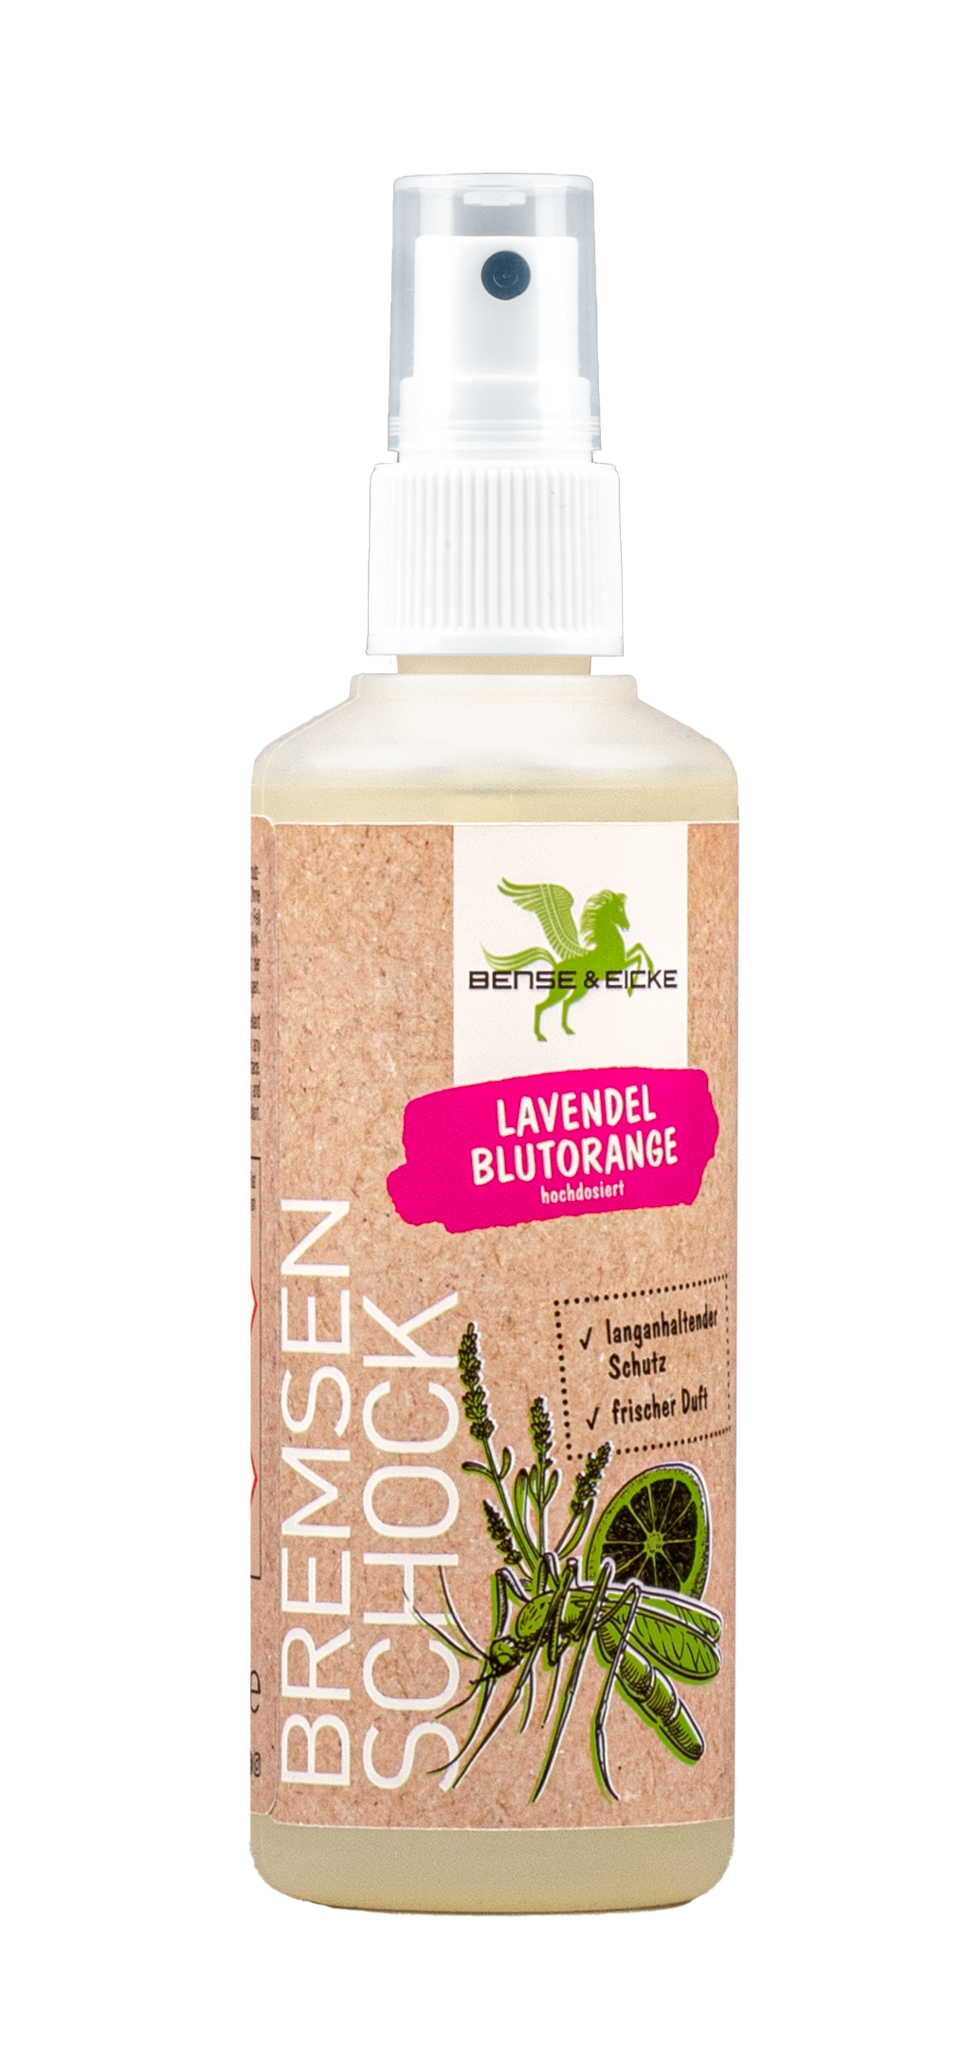 Bense & Eicke | BremsenSchock Lavendel Blutorange TESTEDITION - Insektenschutz mit frischem Duft und 20,6% Icaridin - 100 ml